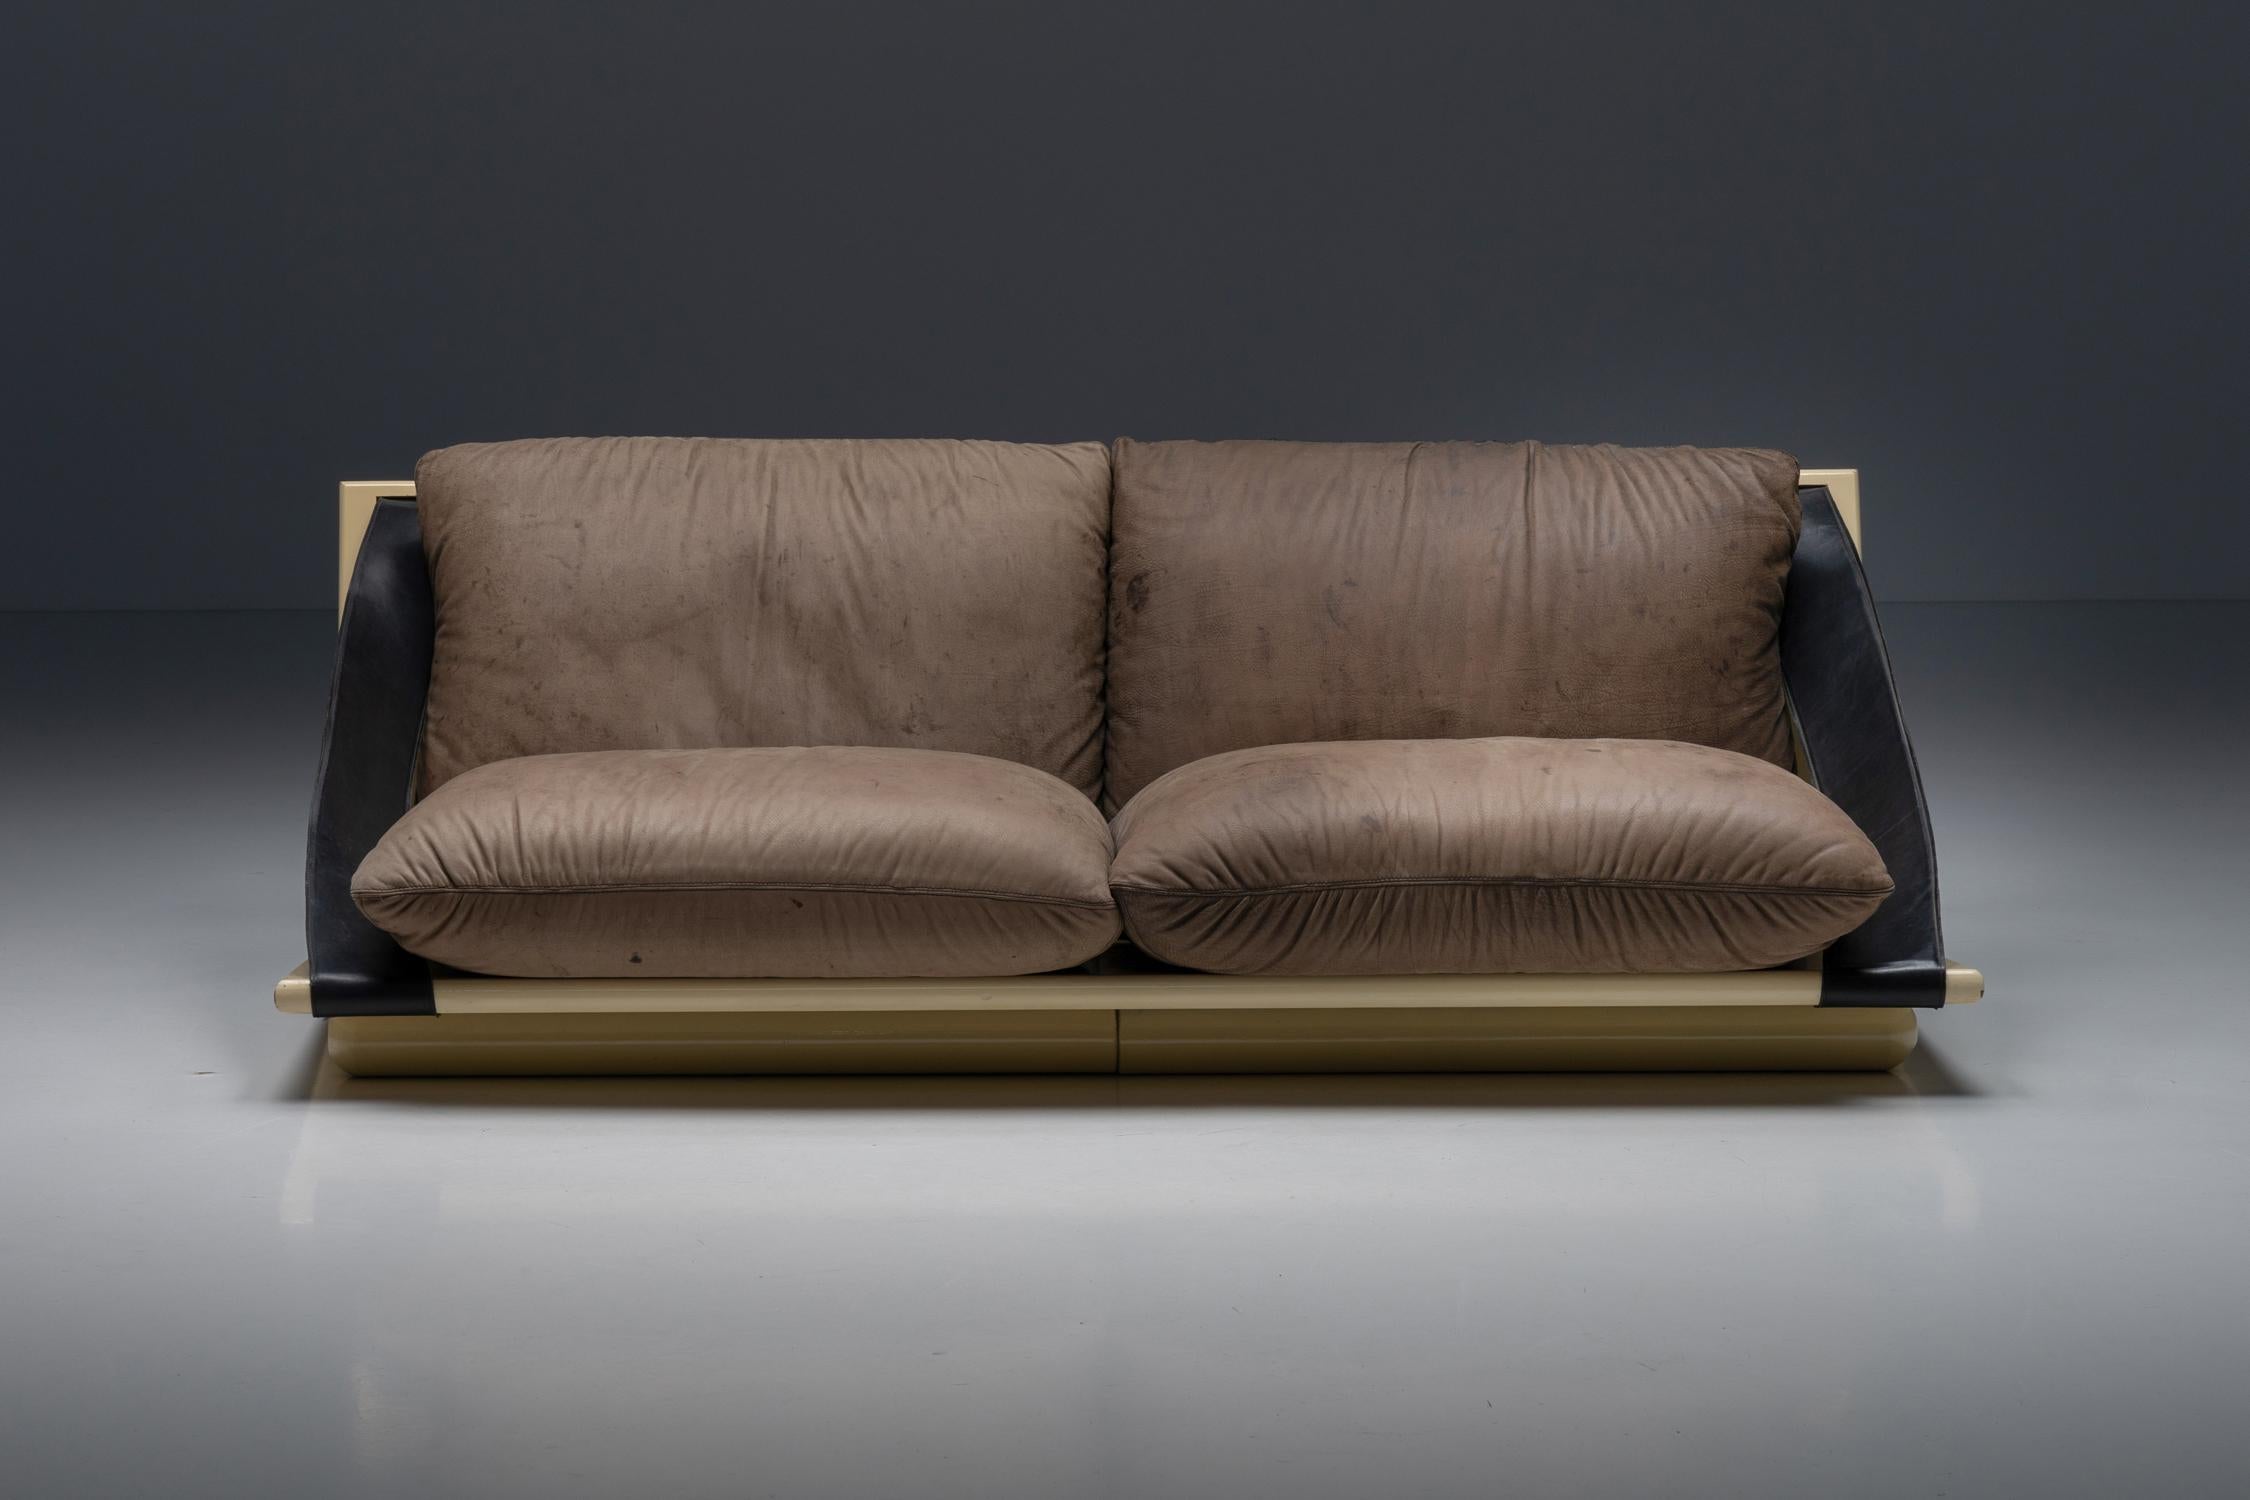 Design/One ; laque ; cuir ; sangles en cuir ; coussins ; chaise de salon ; deux places ; années 1970 ; Mid-Century Modern ; 

Confortable canapé italien à deux places conçu dans les années 1970. Le cadre est constitué de deux unités rectangulaires